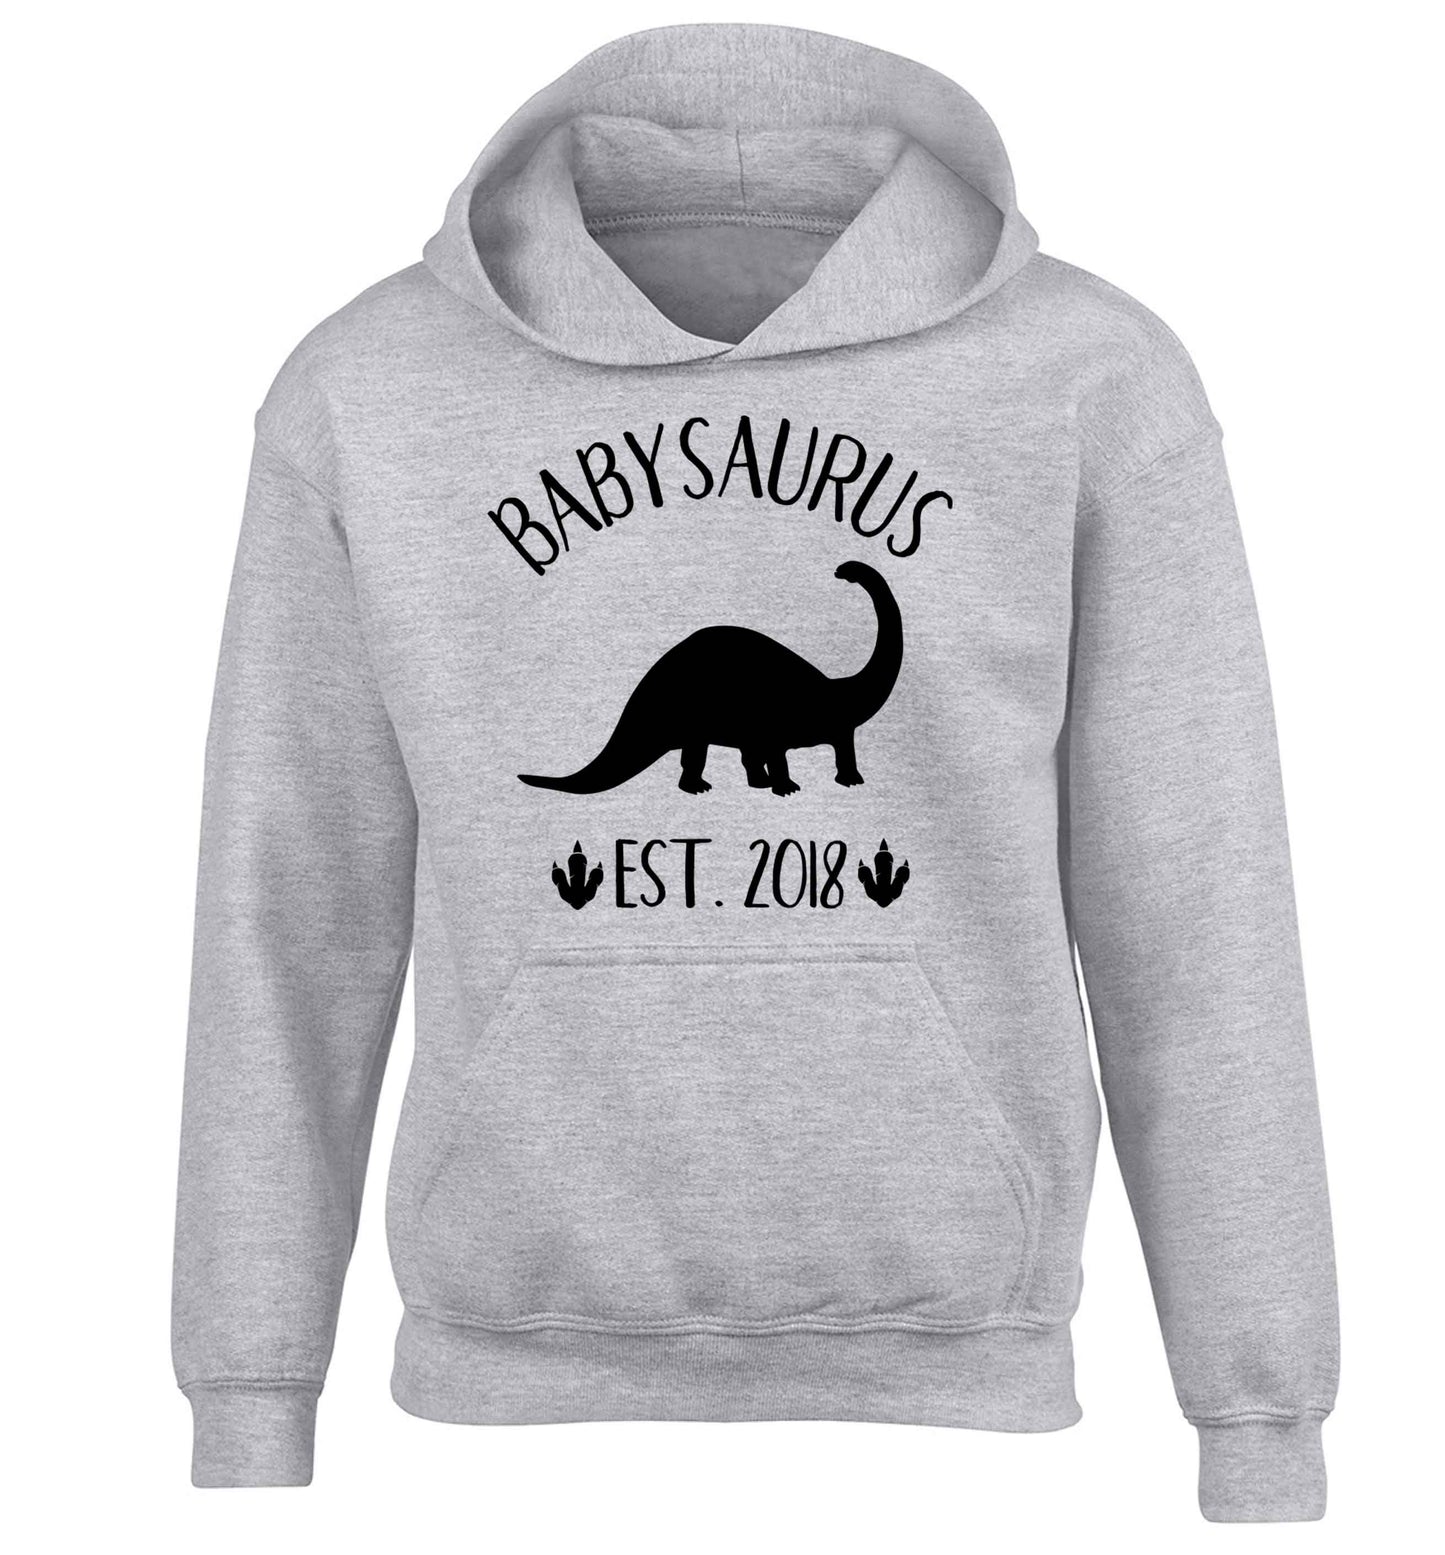 Personalised babysaurus since (custom date) children's grey hoodie 12-13 Years